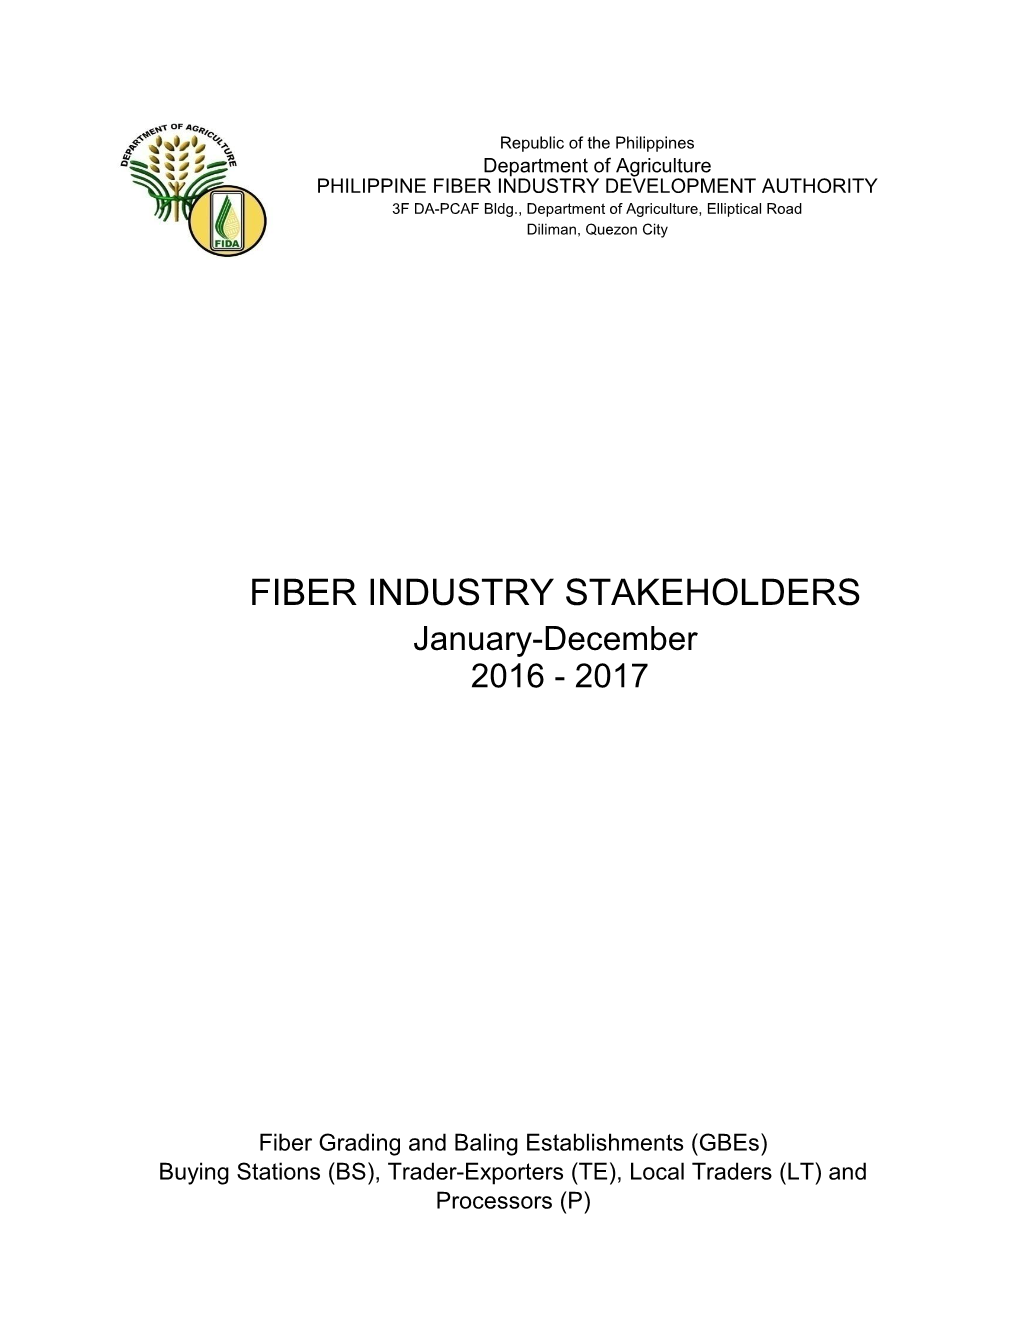 FIBER INDUSTRY STAKEHOLDERS January-December 2016 - 2017